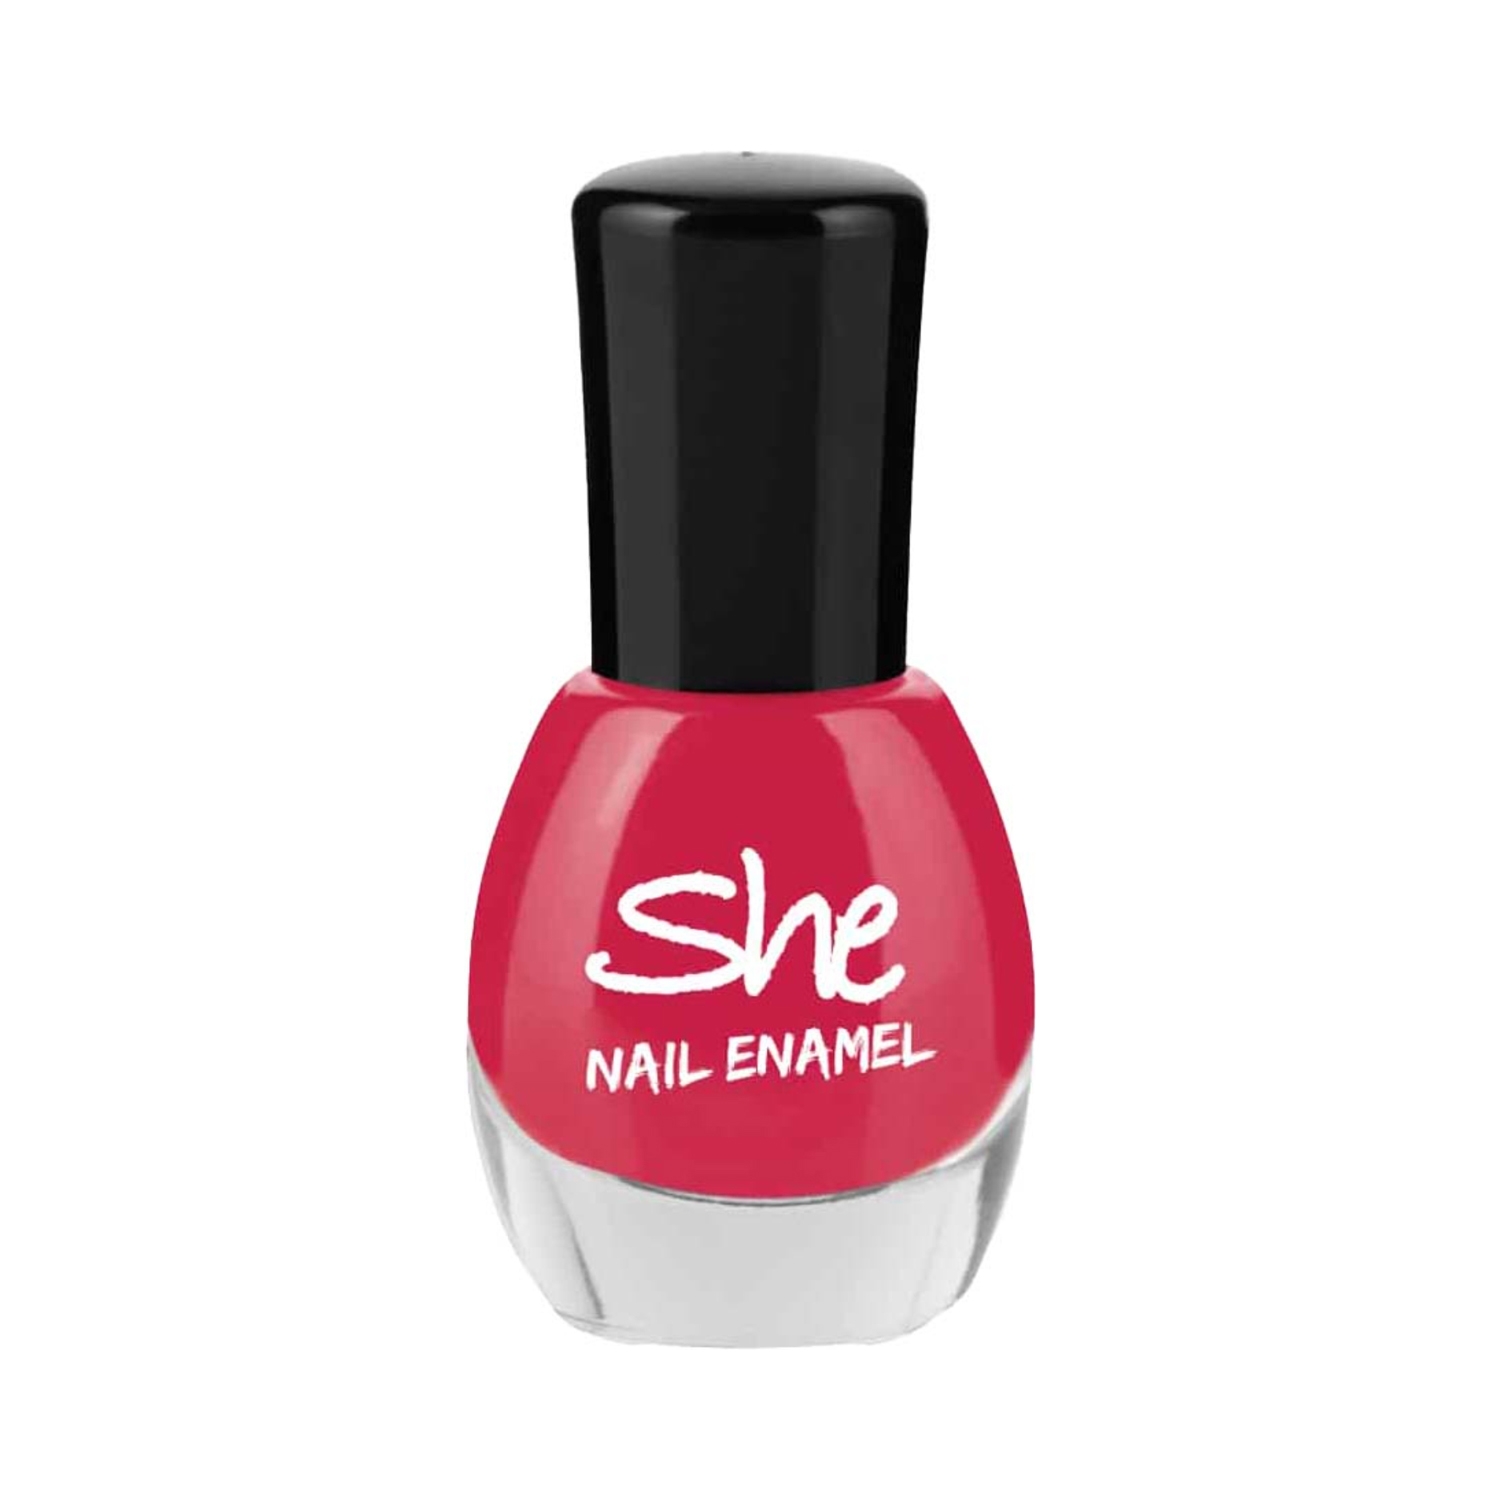 She | She Makeup Nail Enamel - 215 Raspberry Pink (8ml)